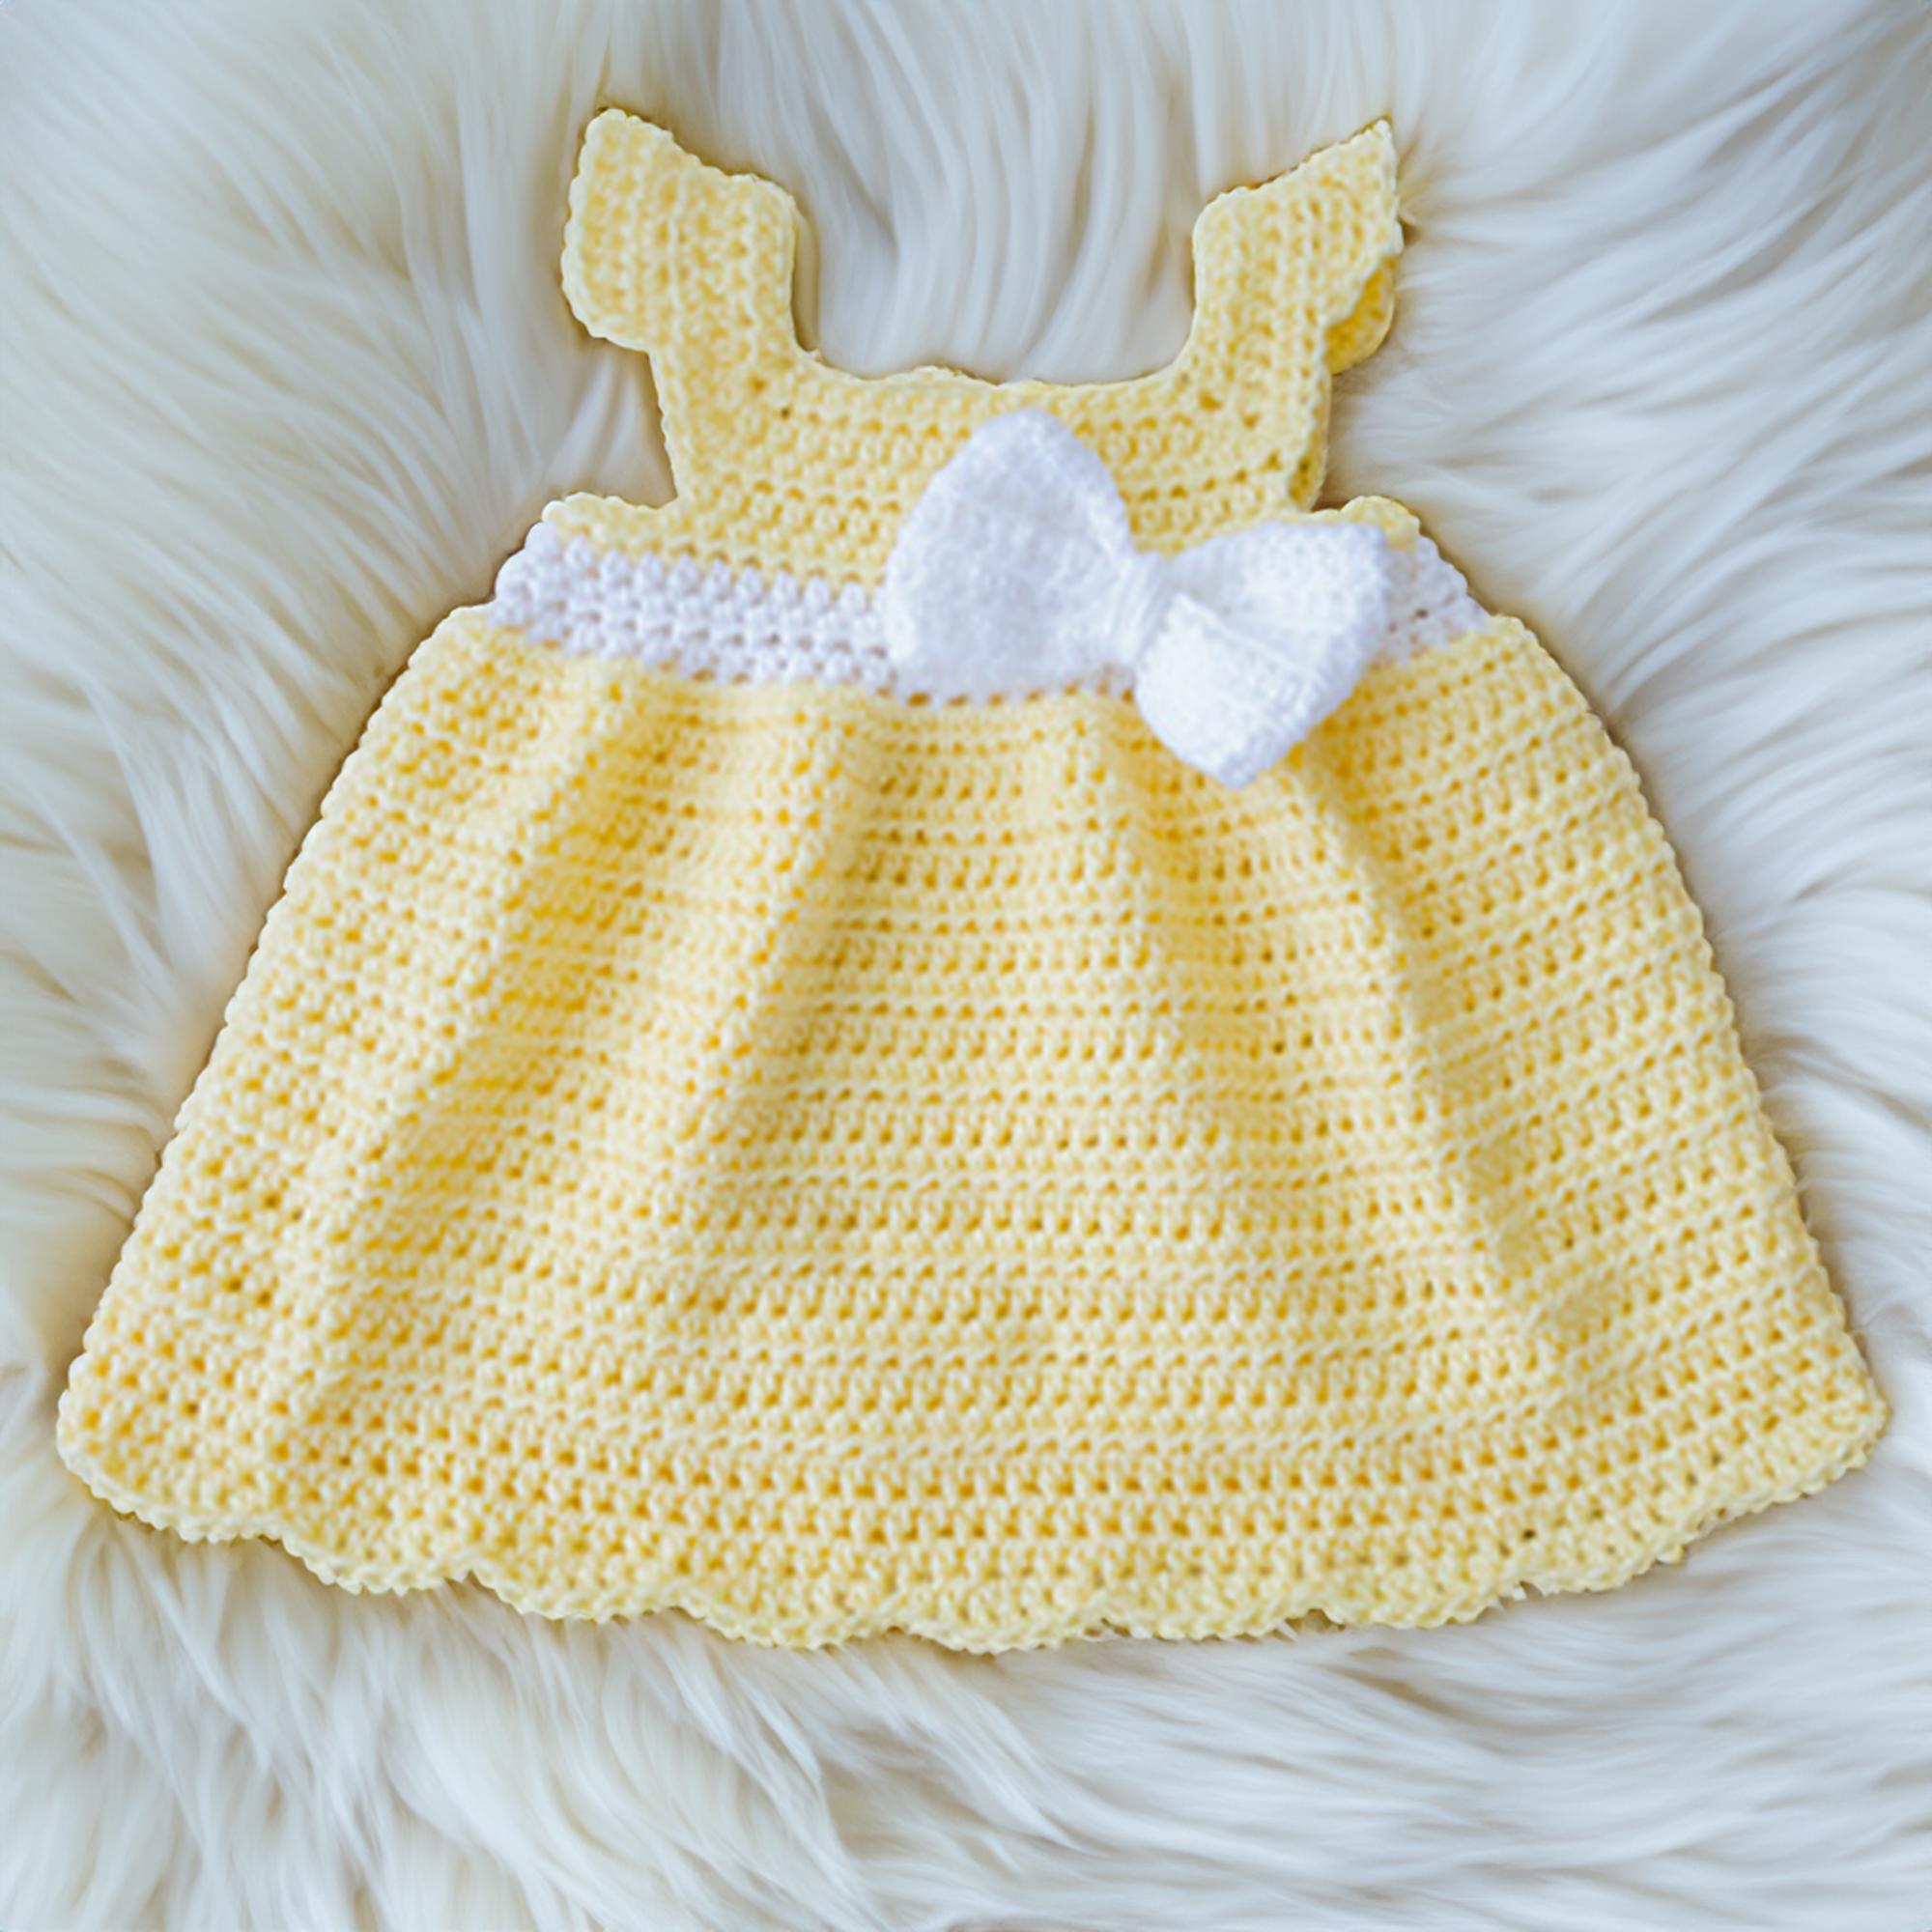 Sunny Daisy Bow Baby/Kids Dress